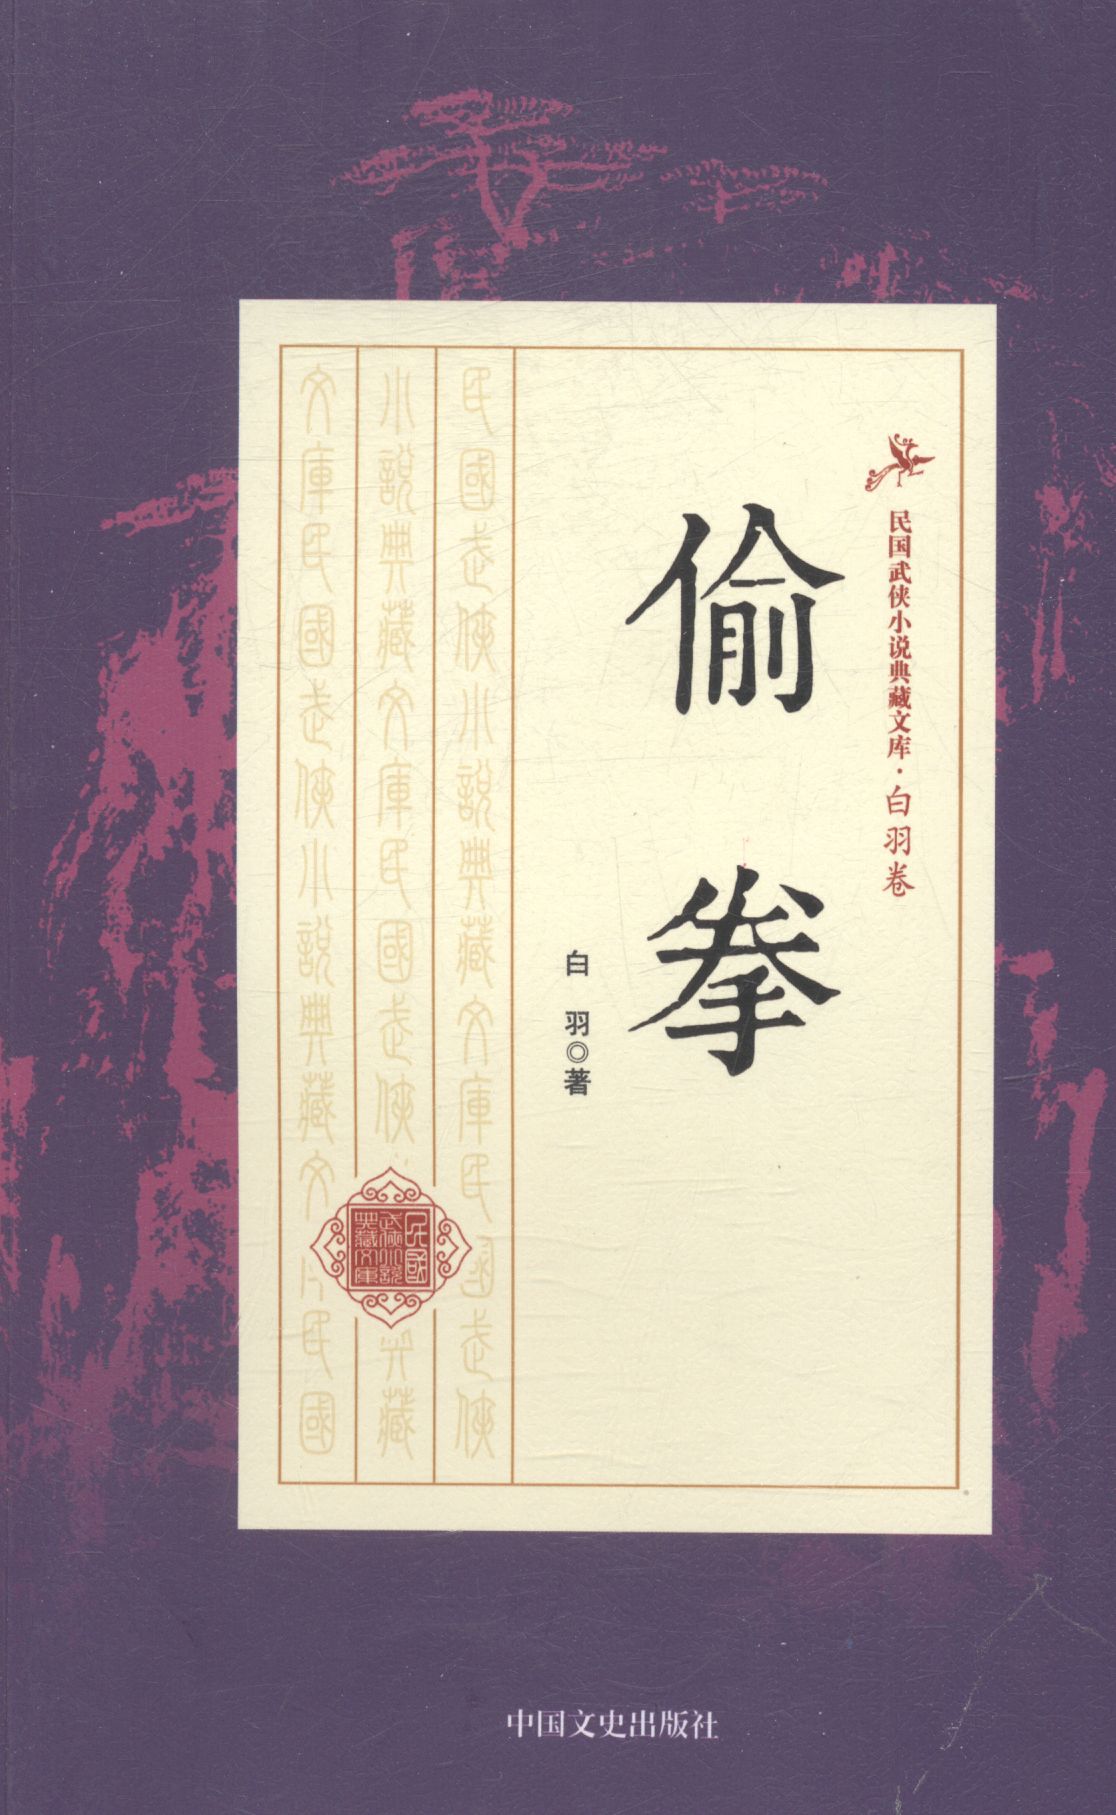 偷拳 小说 白羽著 中国文史出版社 9787503483653 txt格式下载